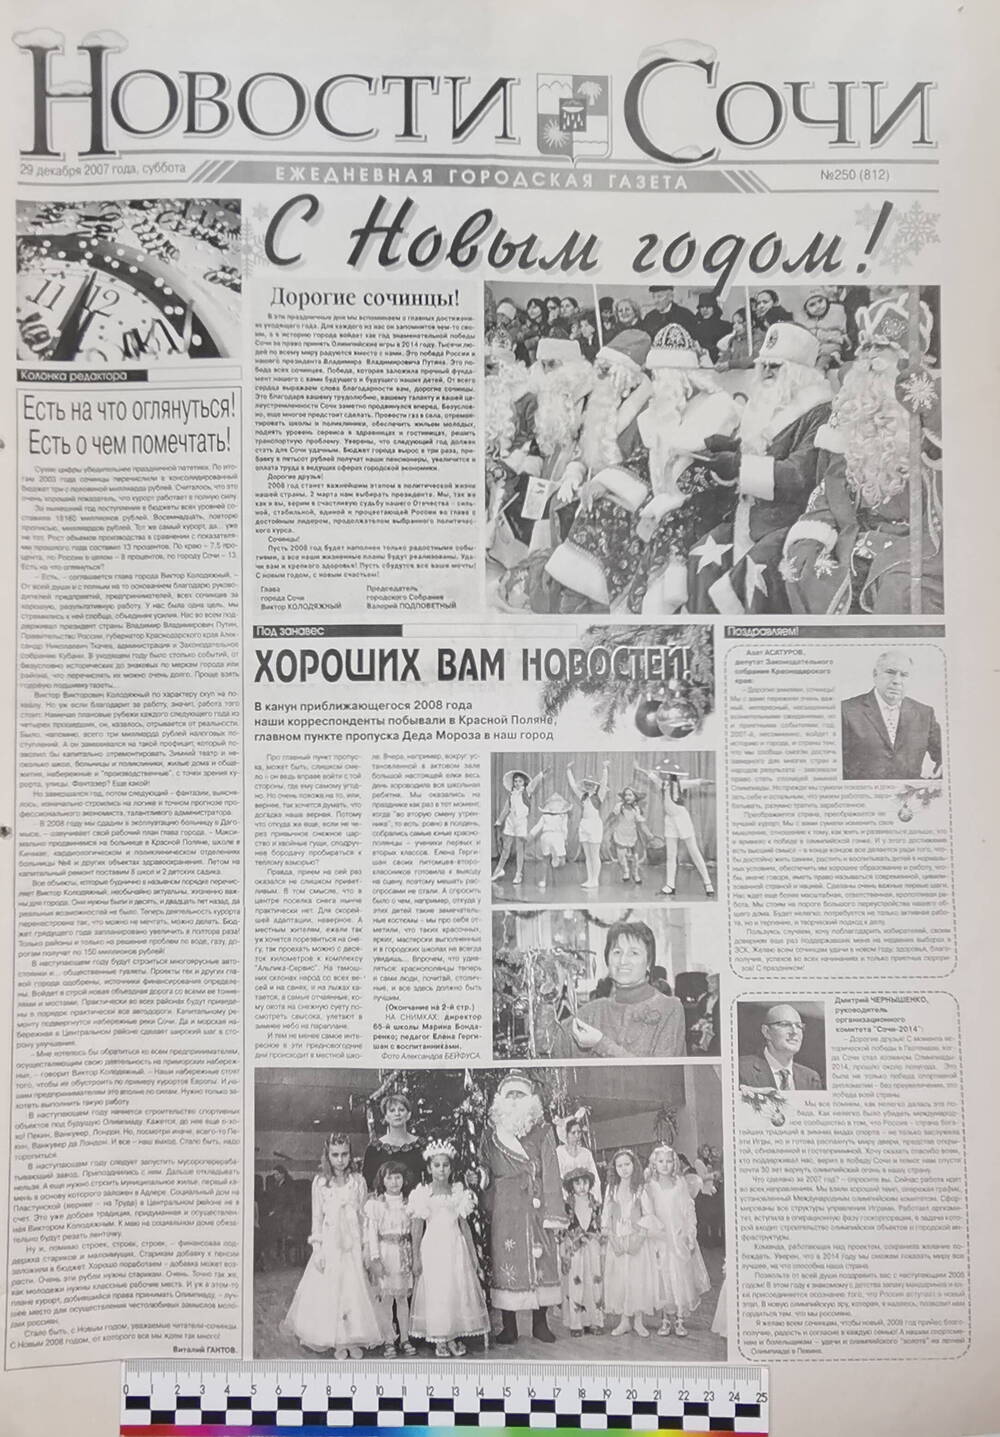 Газета ежедневная городская «Новости Сочи» № 250 (812) от 29 декабря 2007 г.